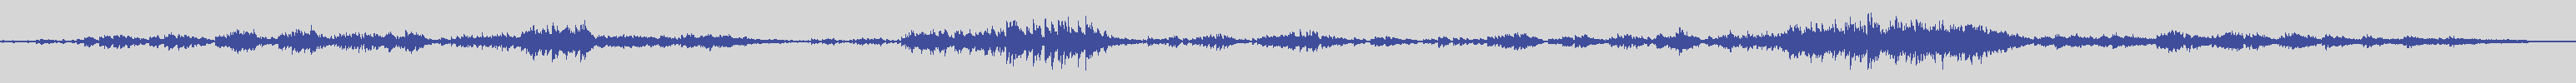 big_music_classic [BMC009] Claude Debussy, Corrado Rossi - Estampes: Pagodes [] audio wave form